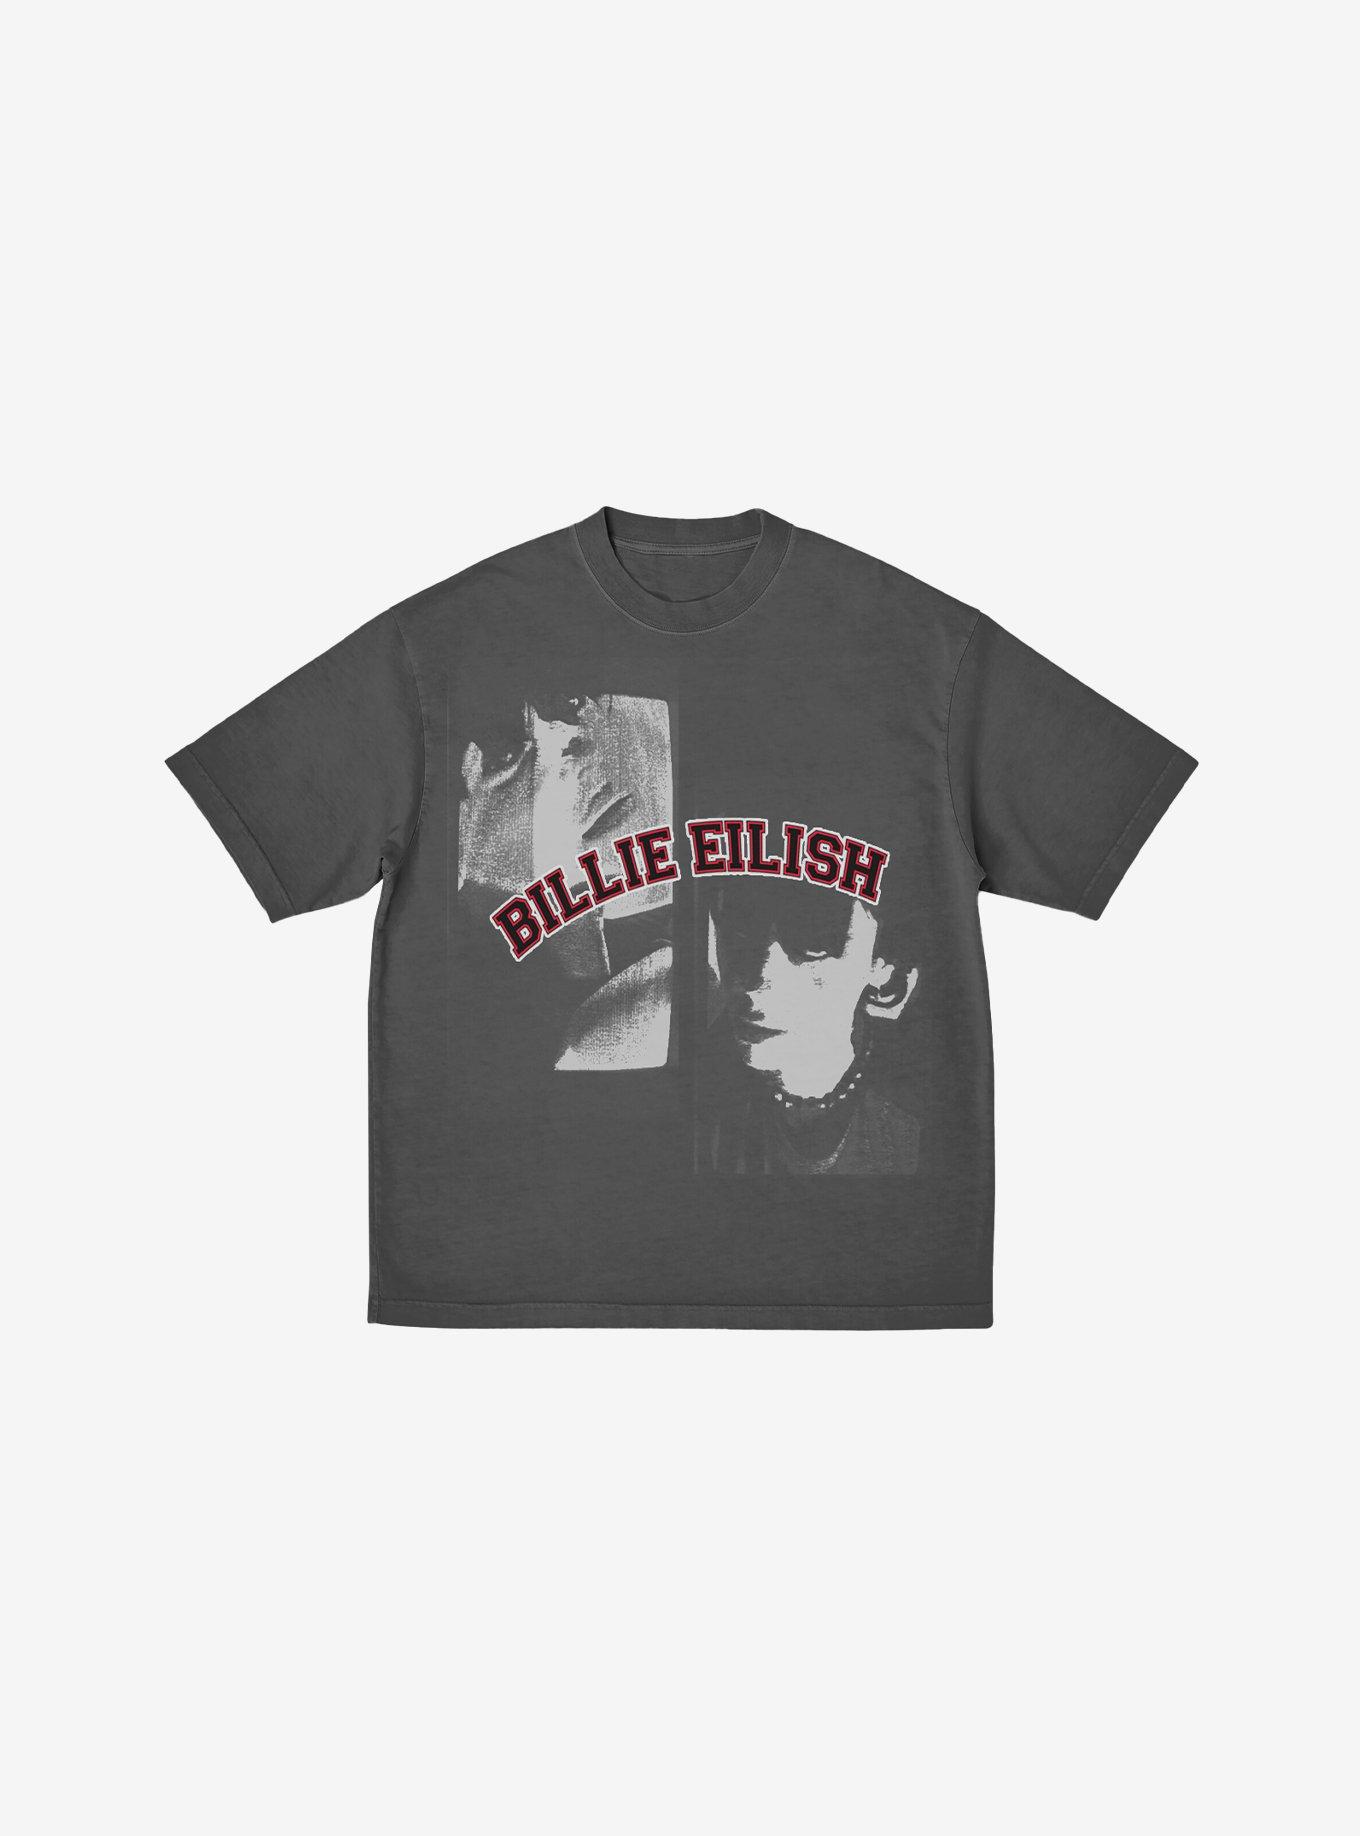 Billie Eilish Double Portrait Grey Boyfriend Fit Girls T-Shirt, CHARCOAL, hi-res